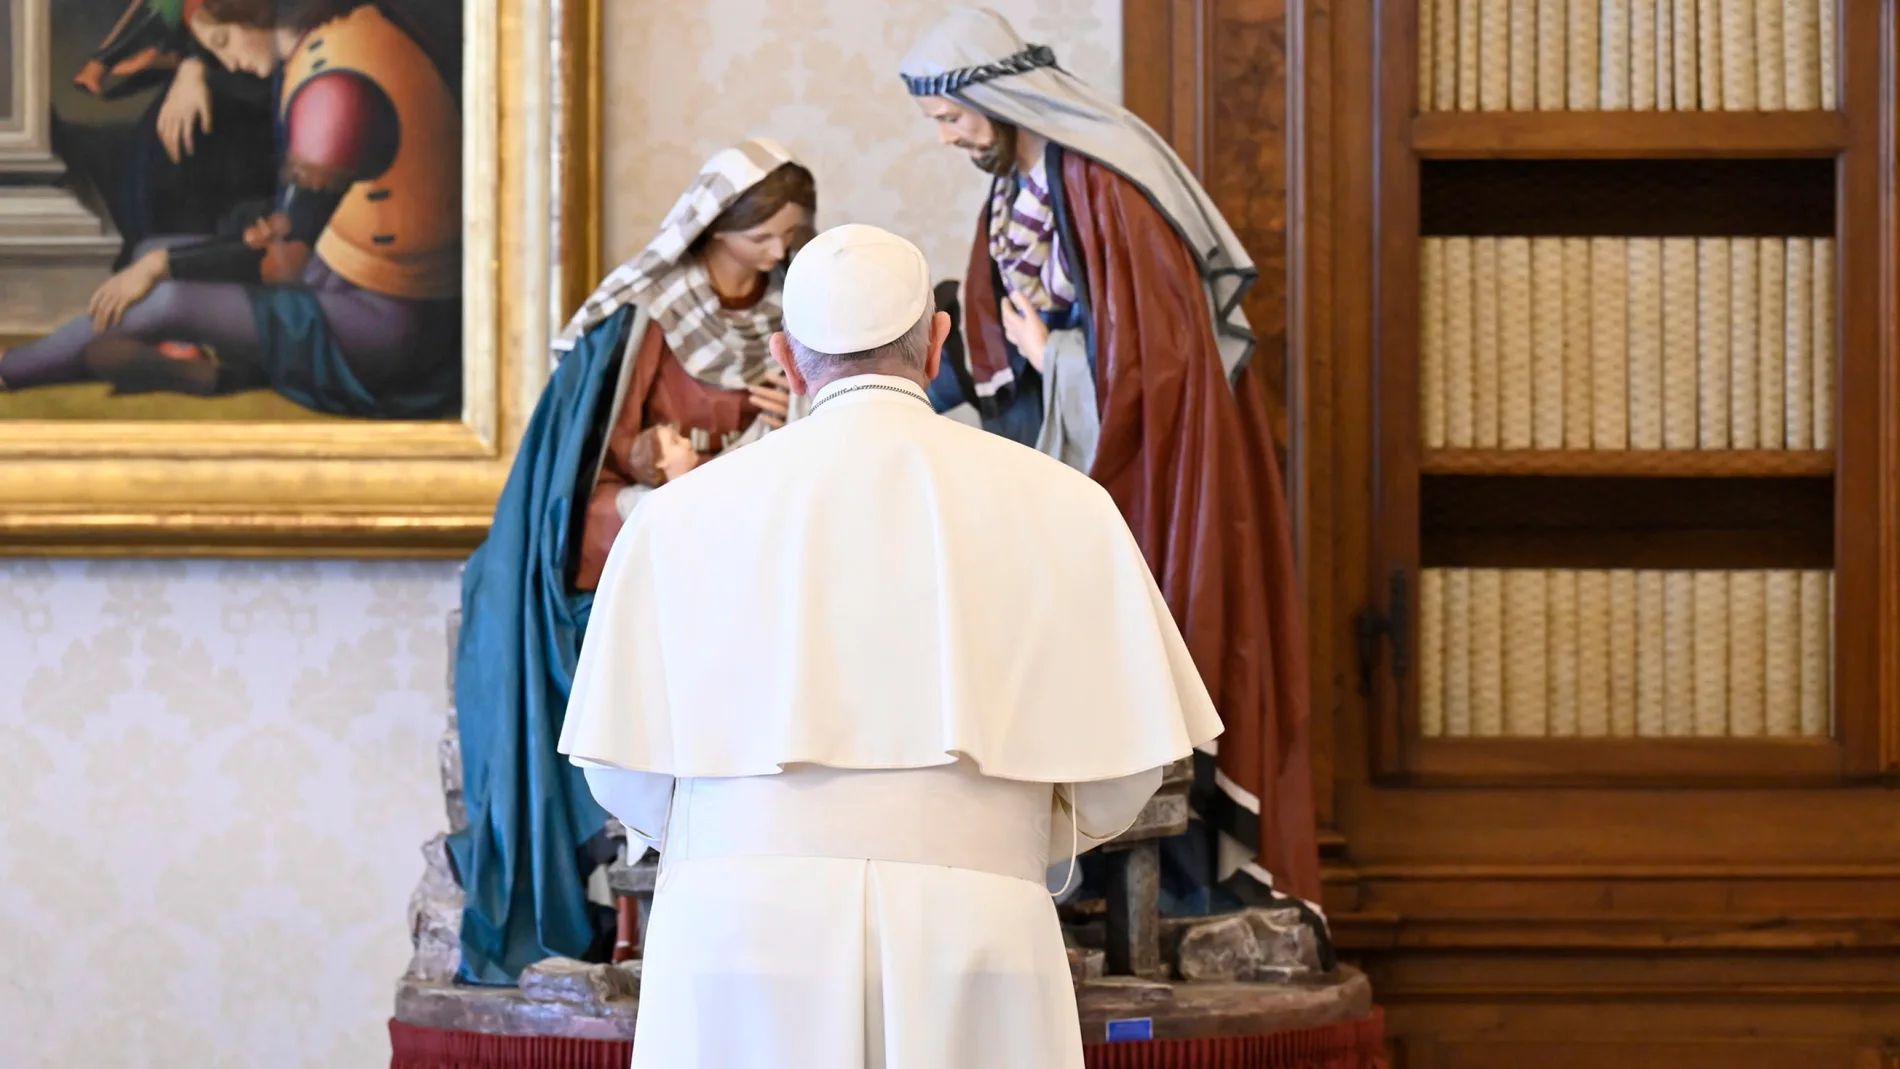 La imagen muestra al Papa Francisco frente a una escena de la Natividad durante el rezo del Ángelus en la librería del Palacio Apostólico en El Vaticano